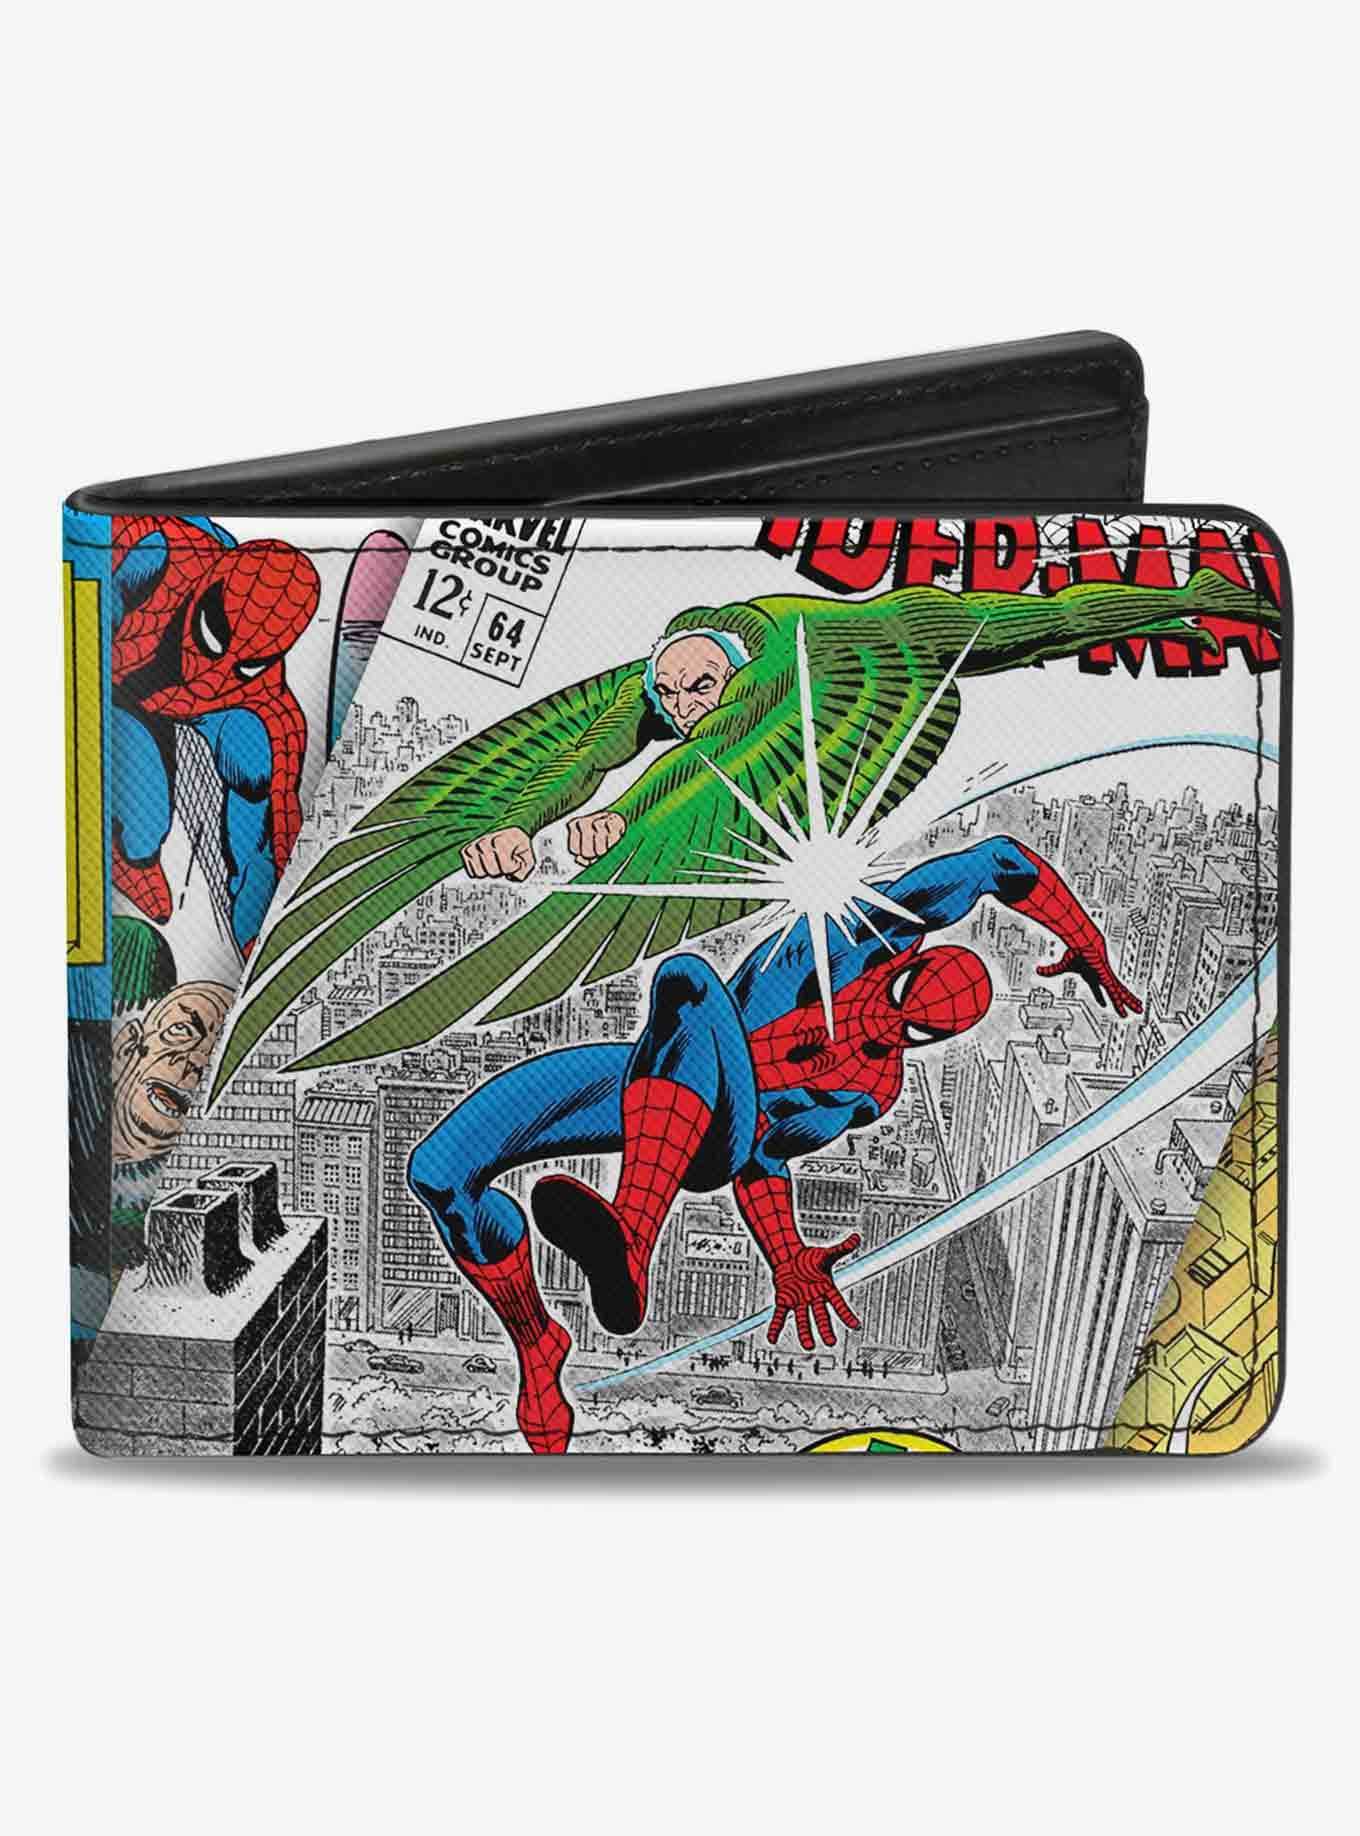 Marvel Spider-Man Vulture Battle Gargoyle Pose Comic Book Covers Bifold Wallet, , hi-res